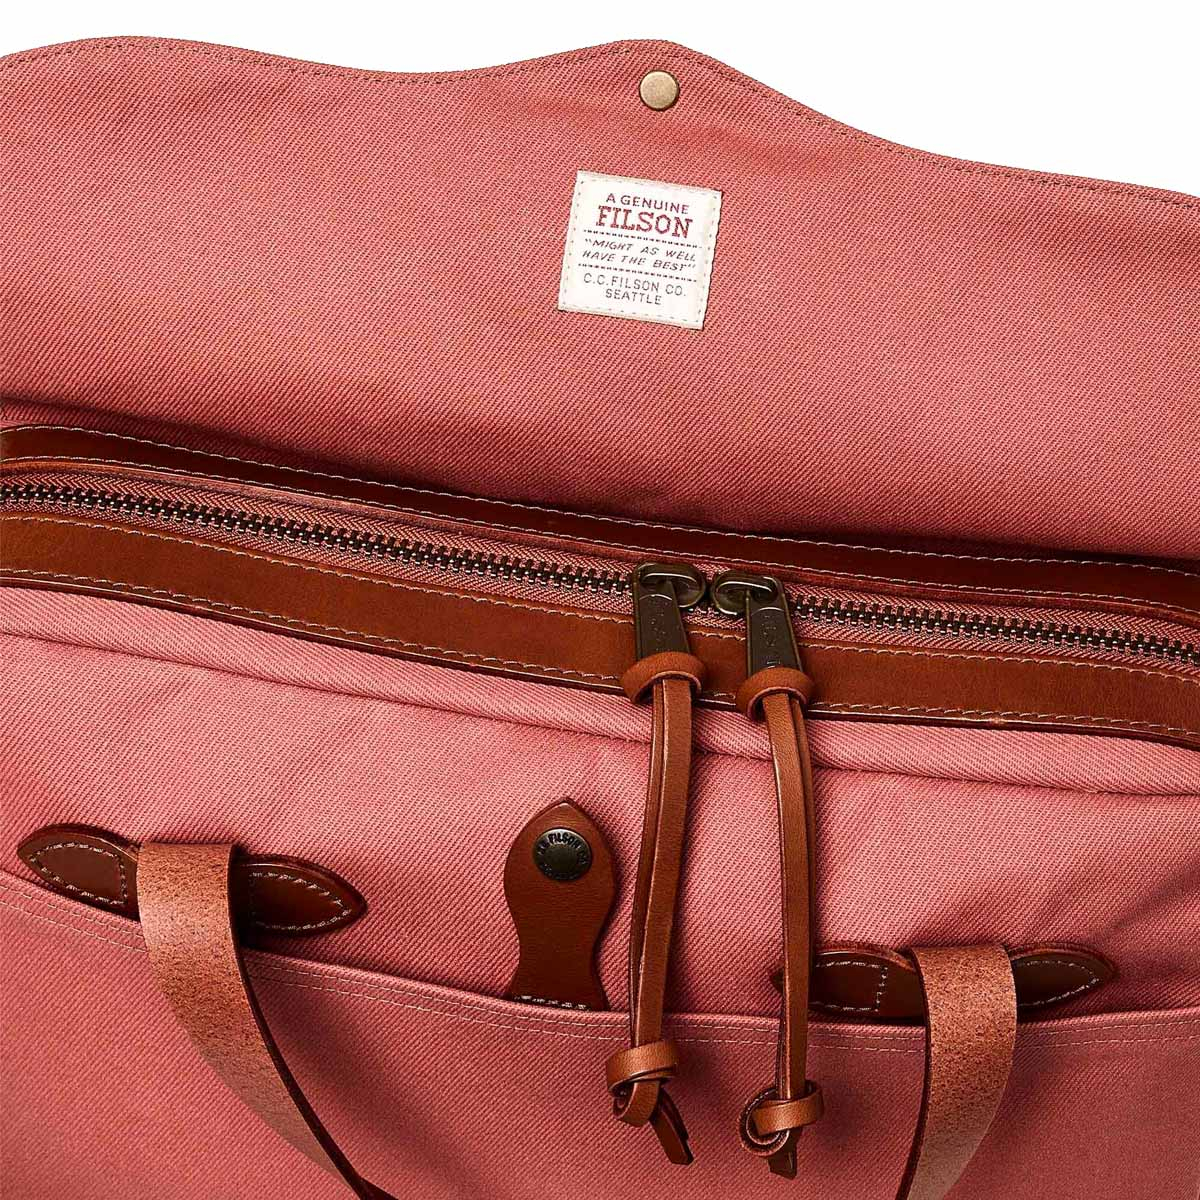 Filson Original Briefcase Cedar Red, extraordinary bag for an ordinary day